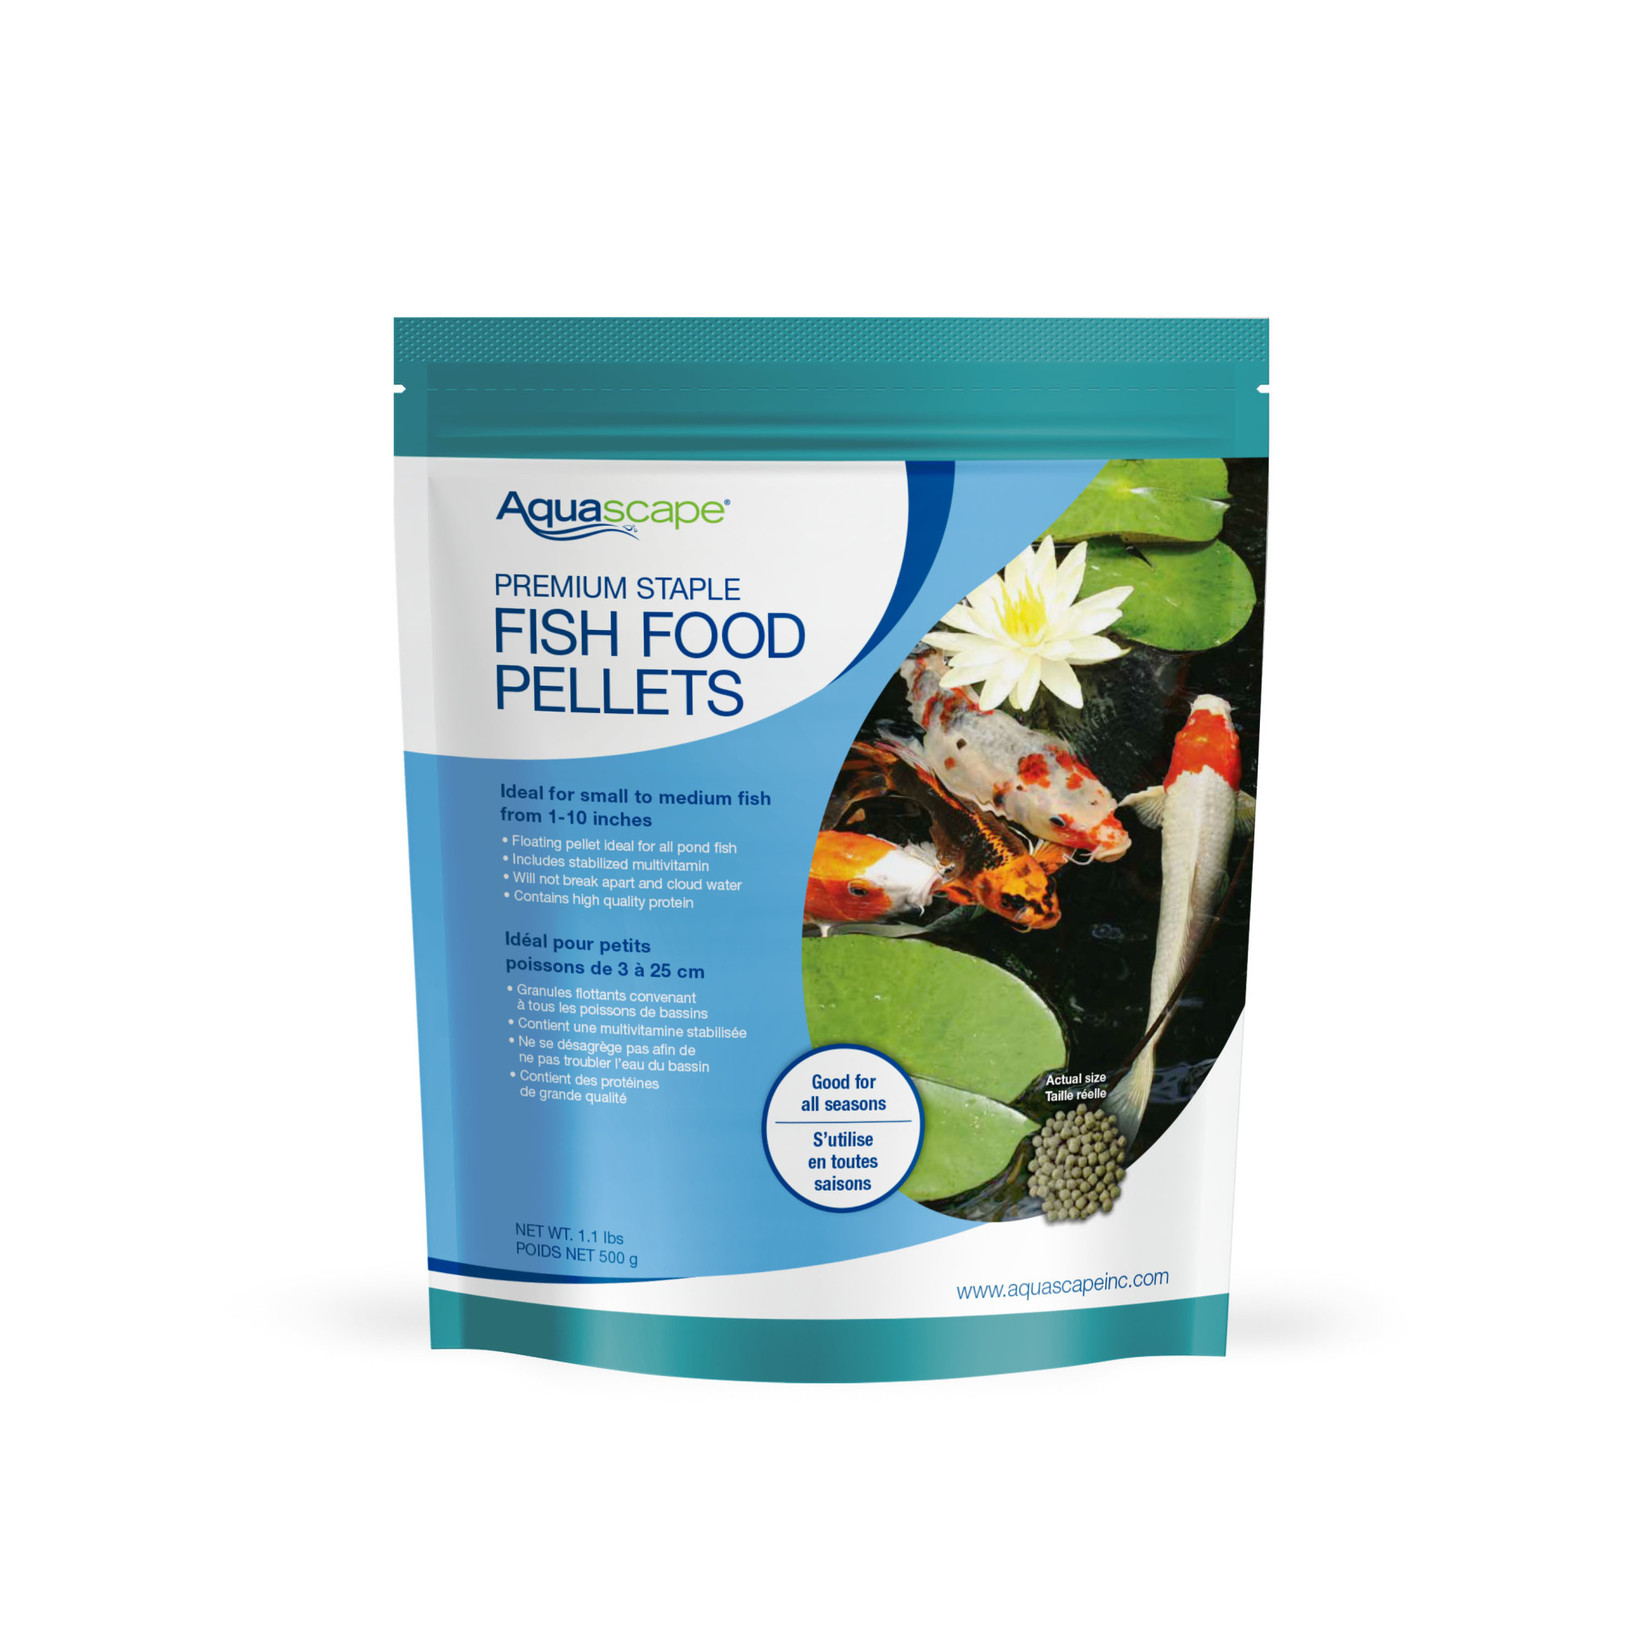 Aquascape Premium Staple Fish Food Pellets - Small Pellets - 1.1 lbs / 500 g